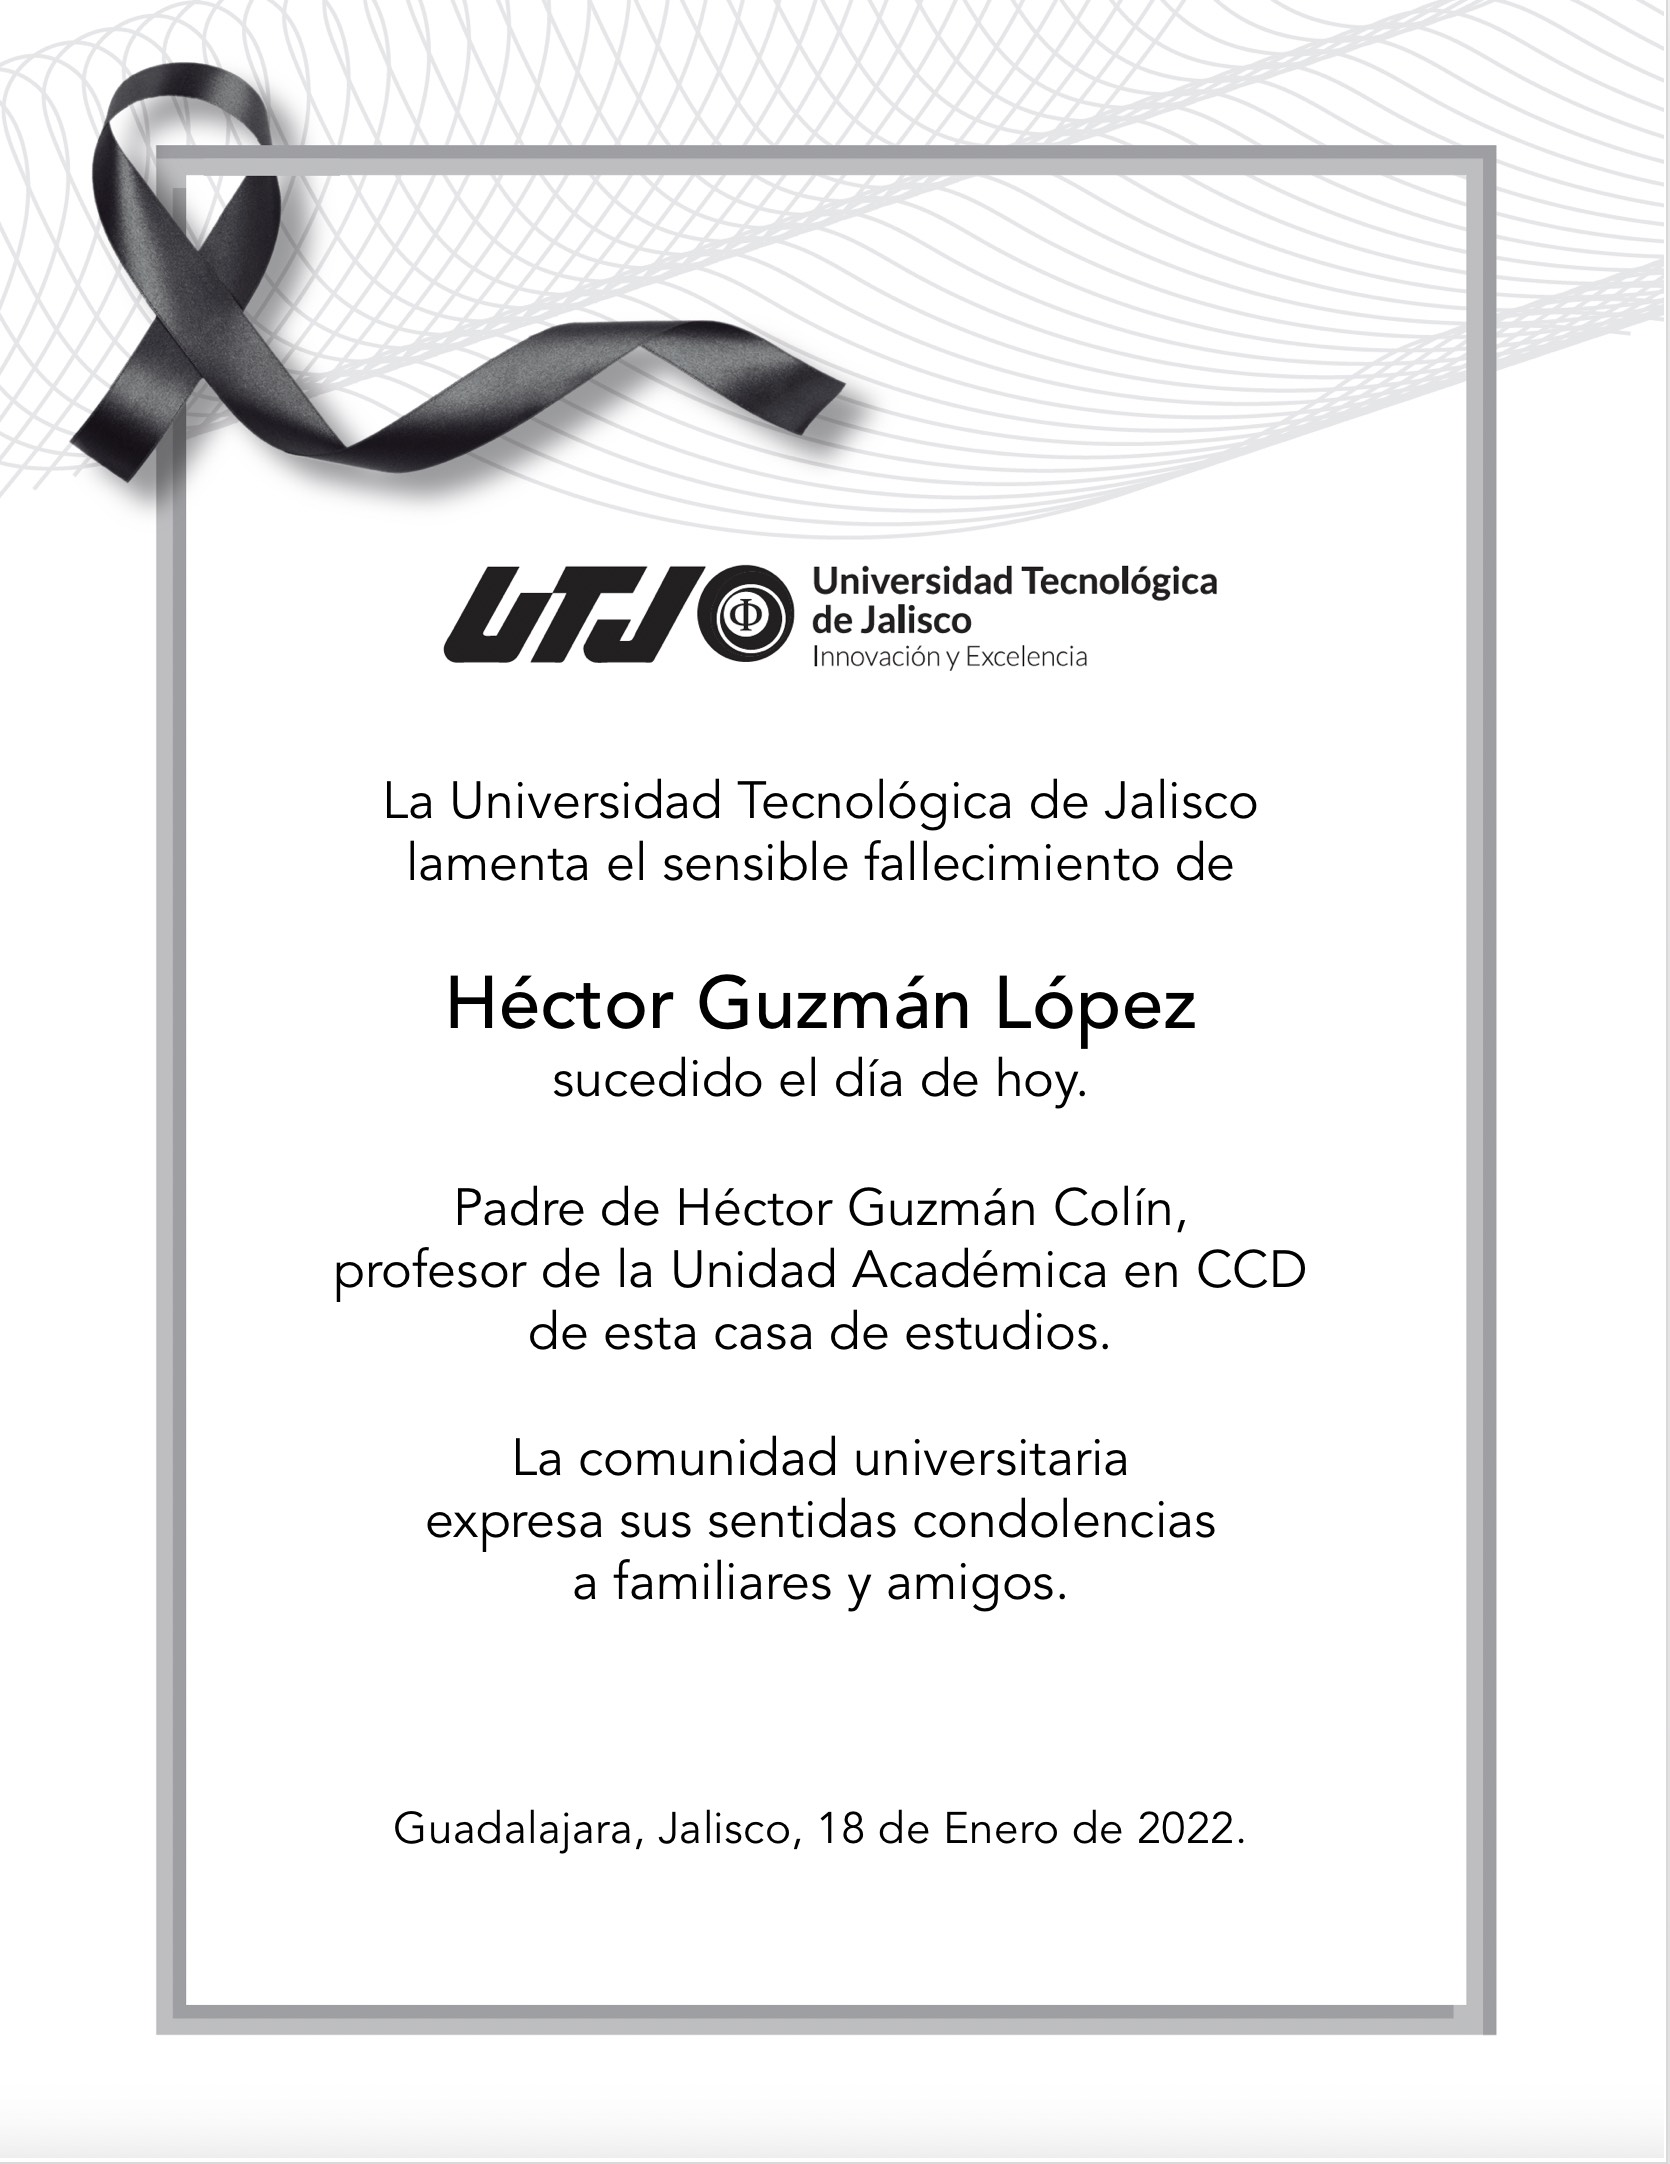 Héctor Guzmán López